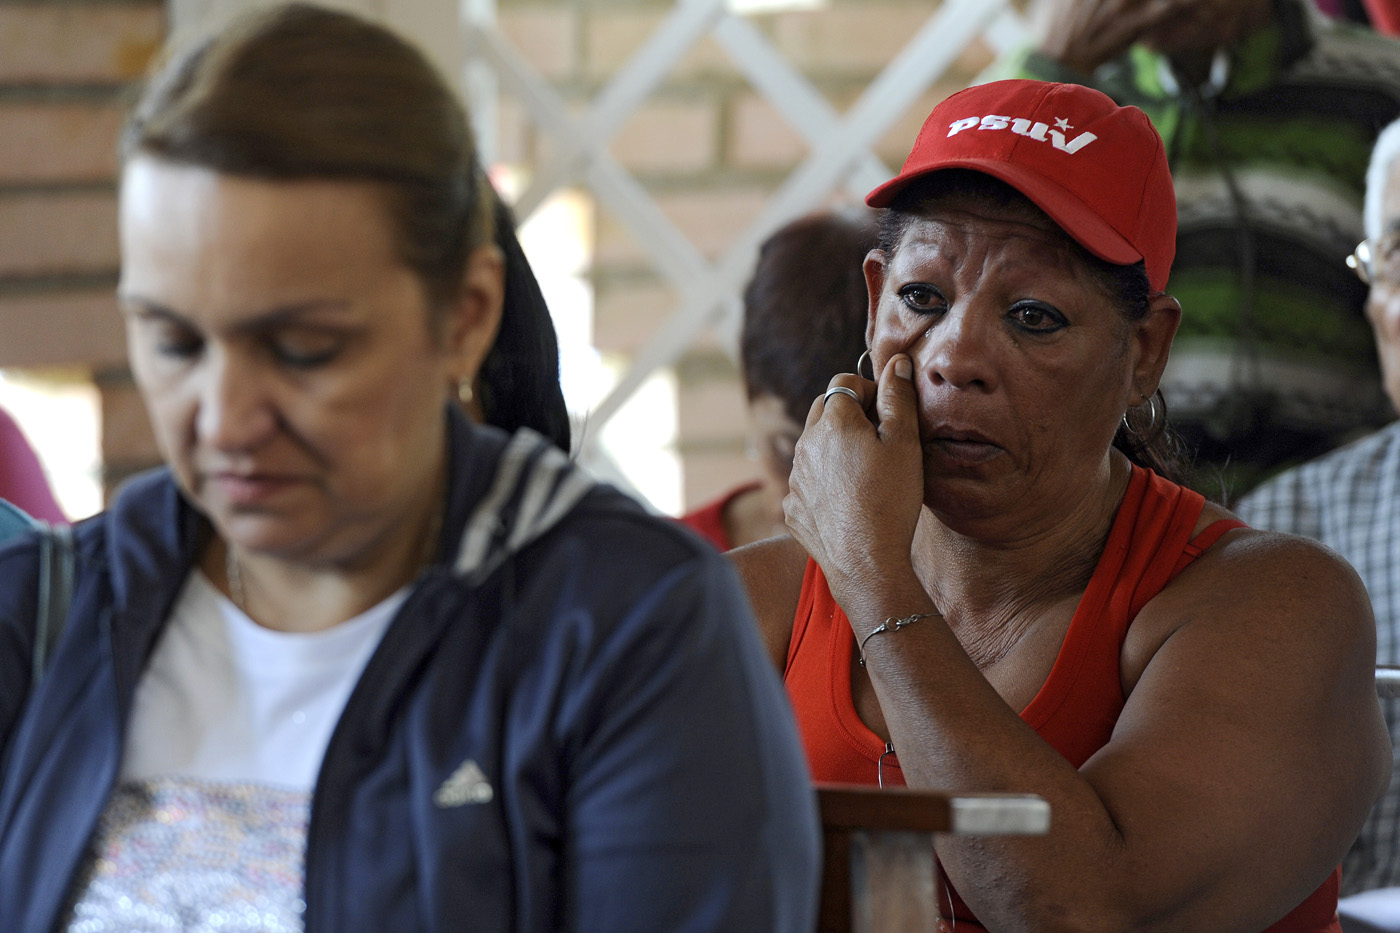 Oficialistas lloran por Chávez (FOTOS)